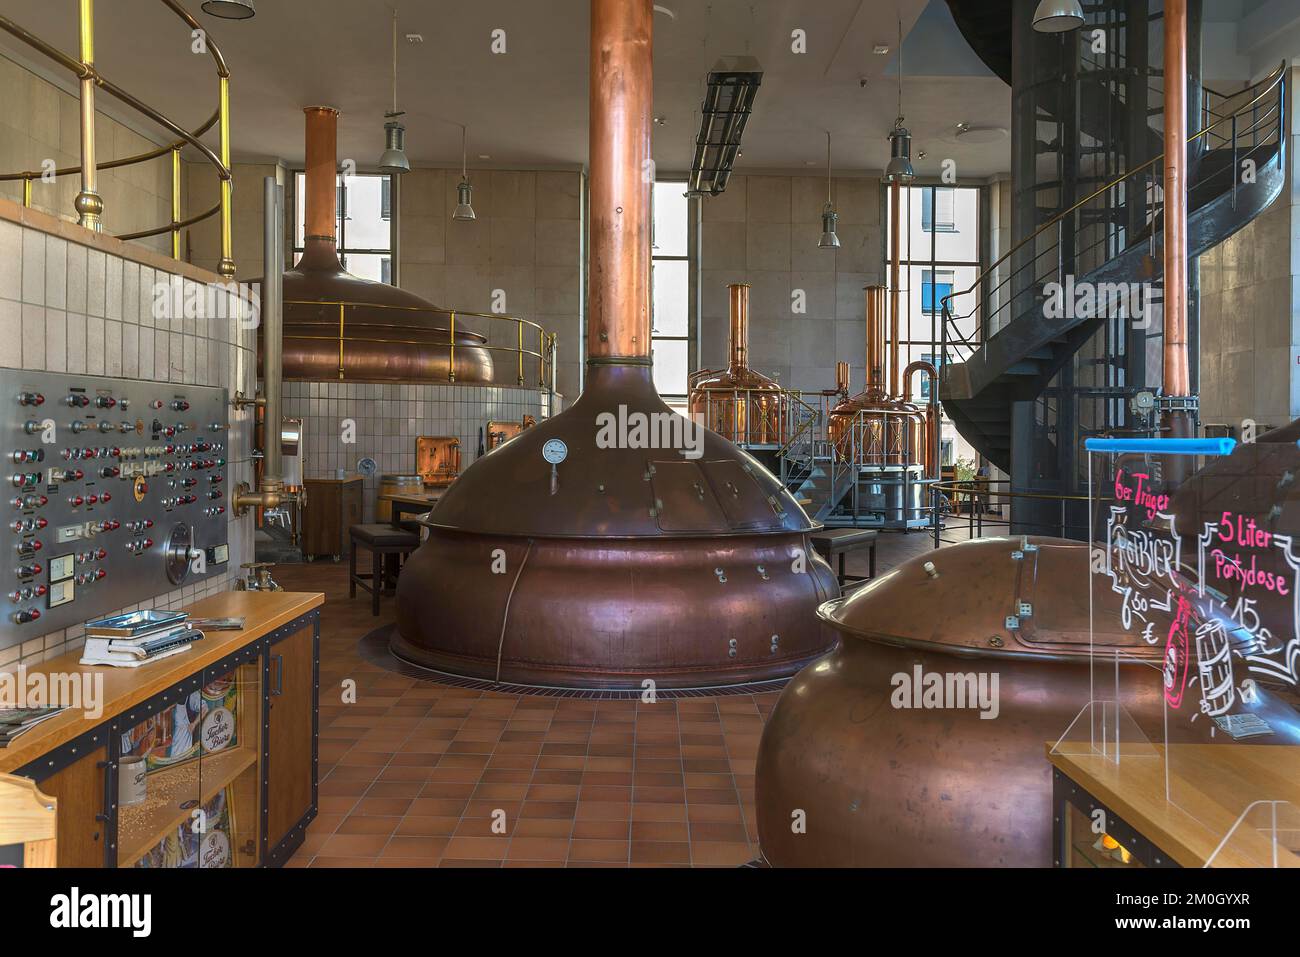 https://c8.alamy.com/comp/2M0GYXR/brew-kettle-of-a-brewery-bavaria-germany-europe-2M0GYXR.jpg